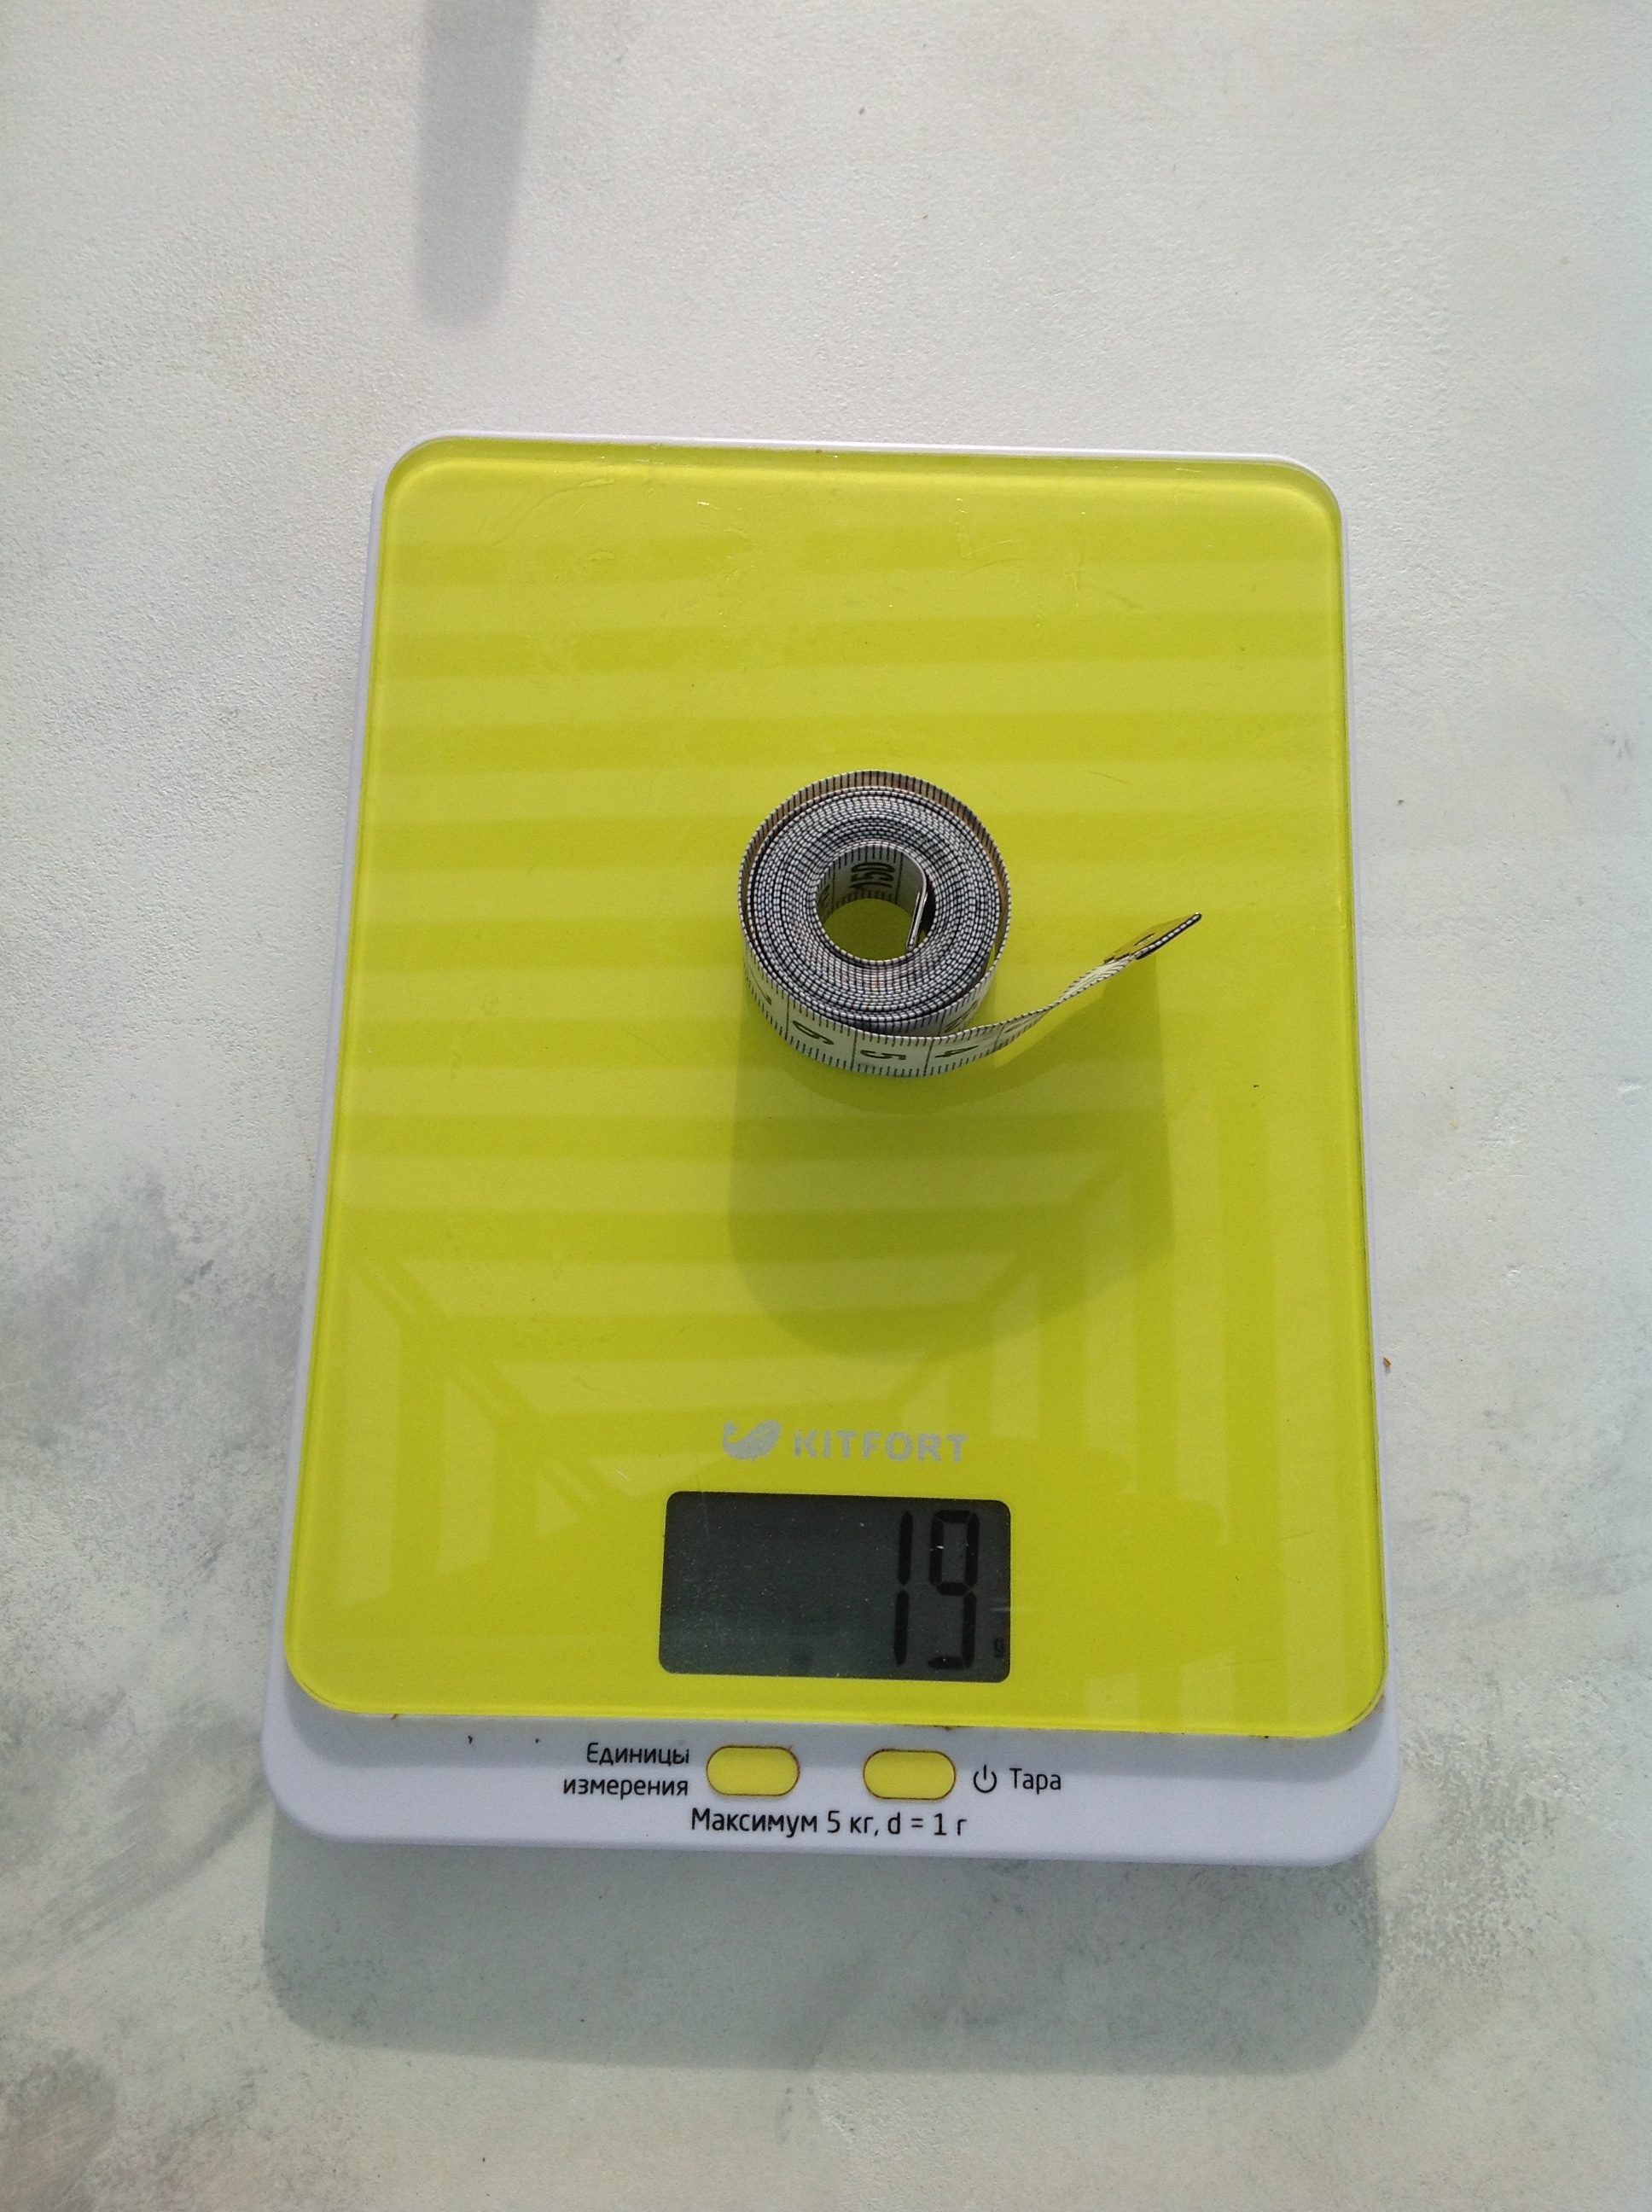 Zentimeterband Gewicht